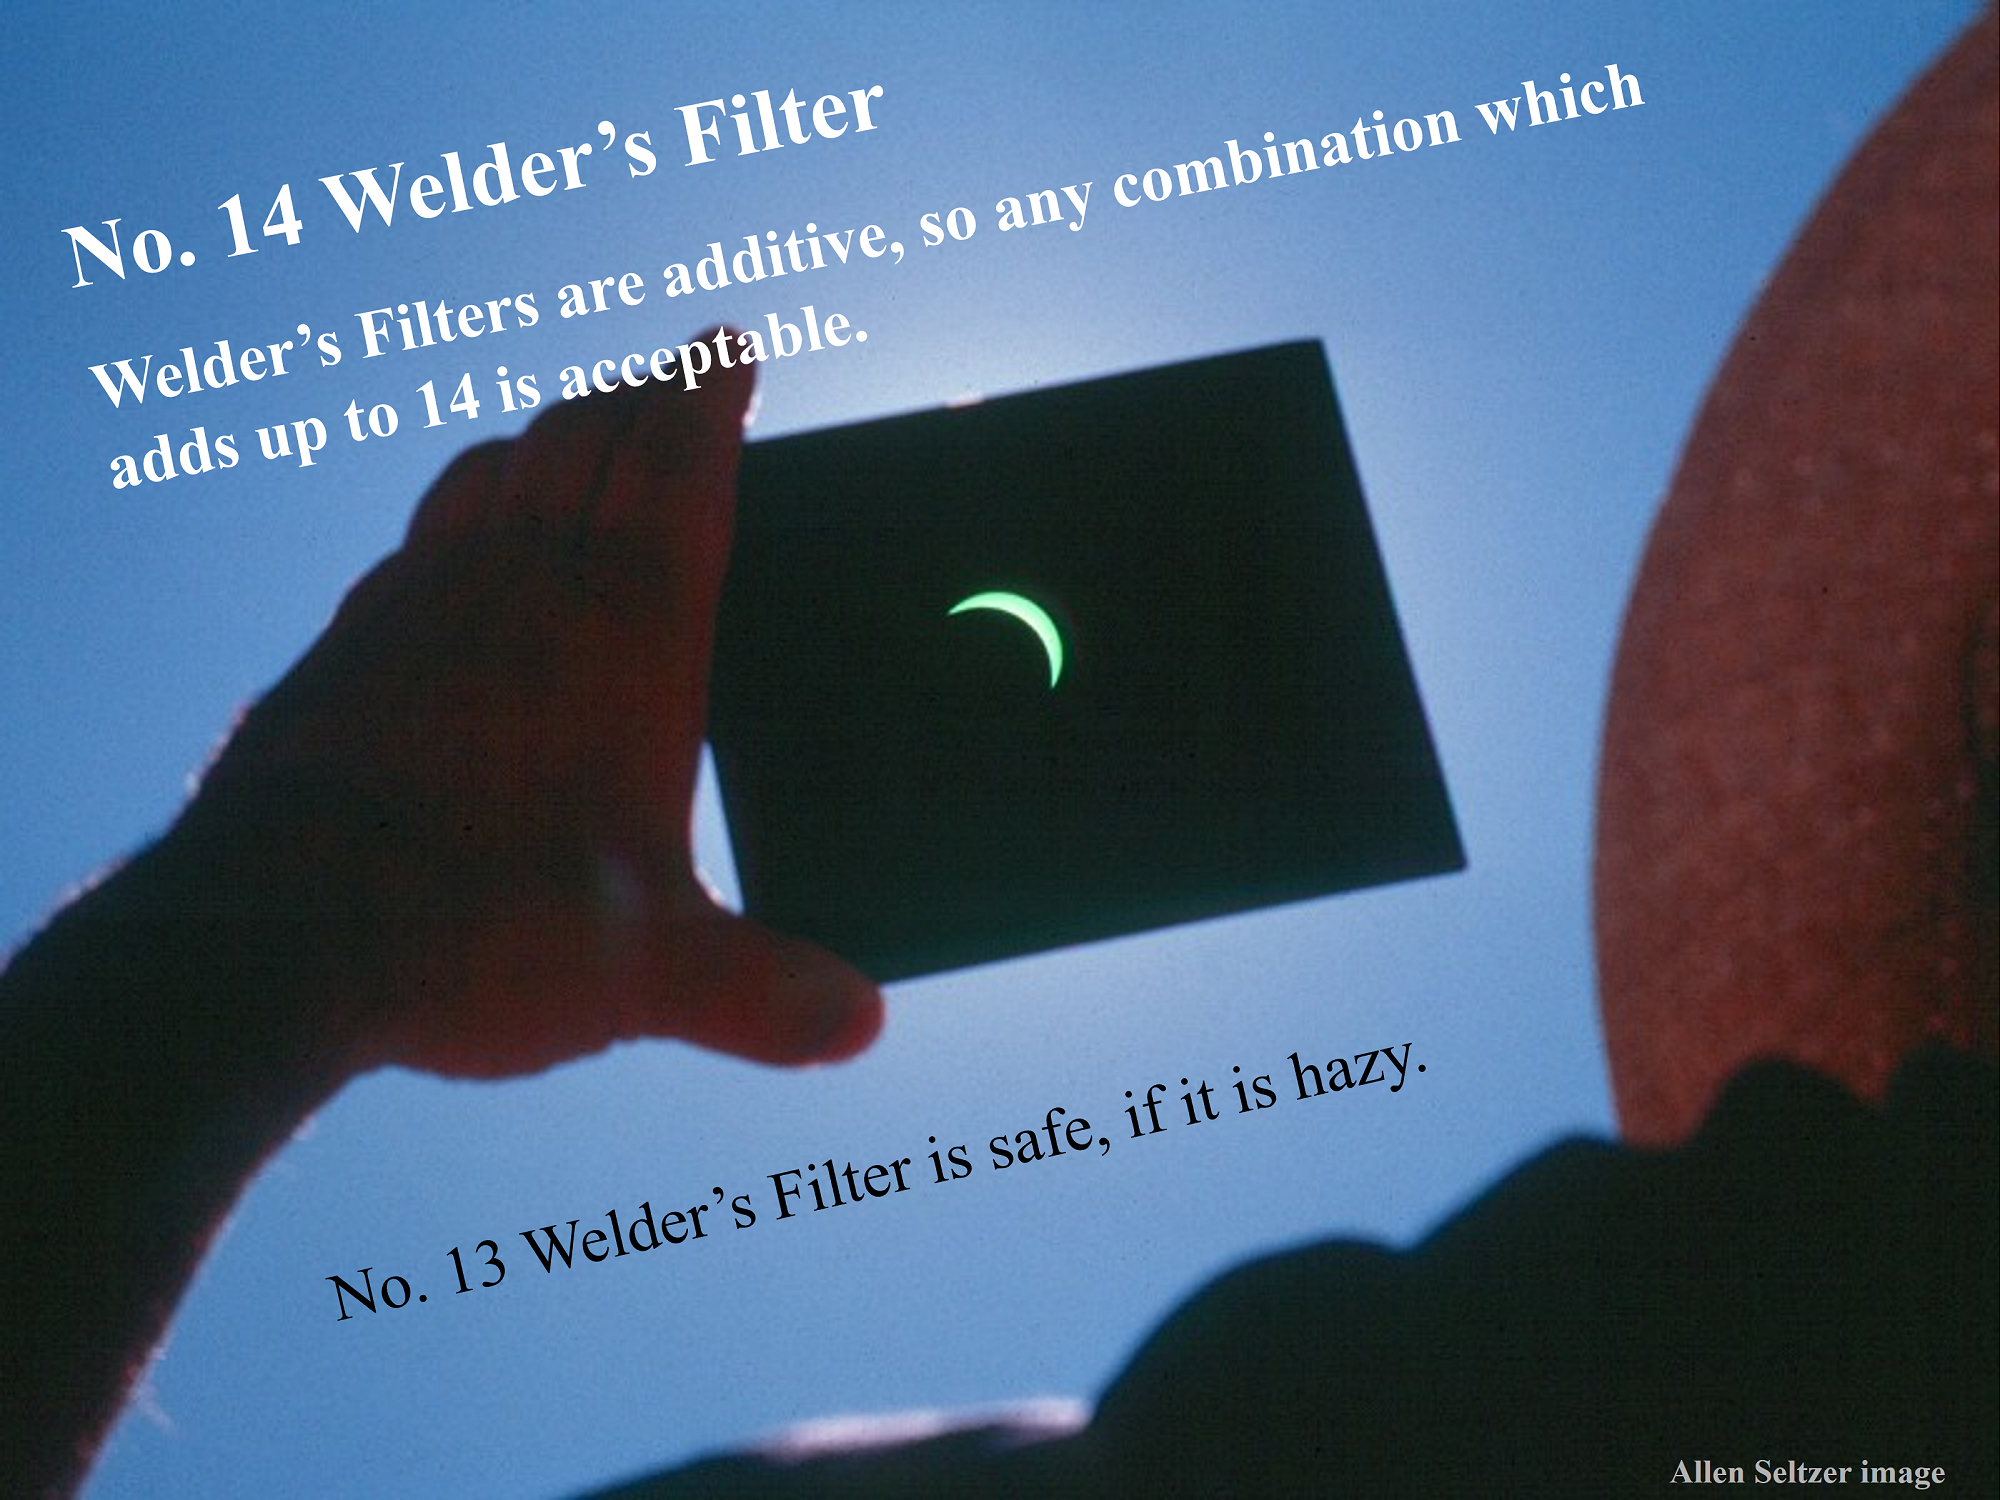 [Number 14 Welder's Filter]